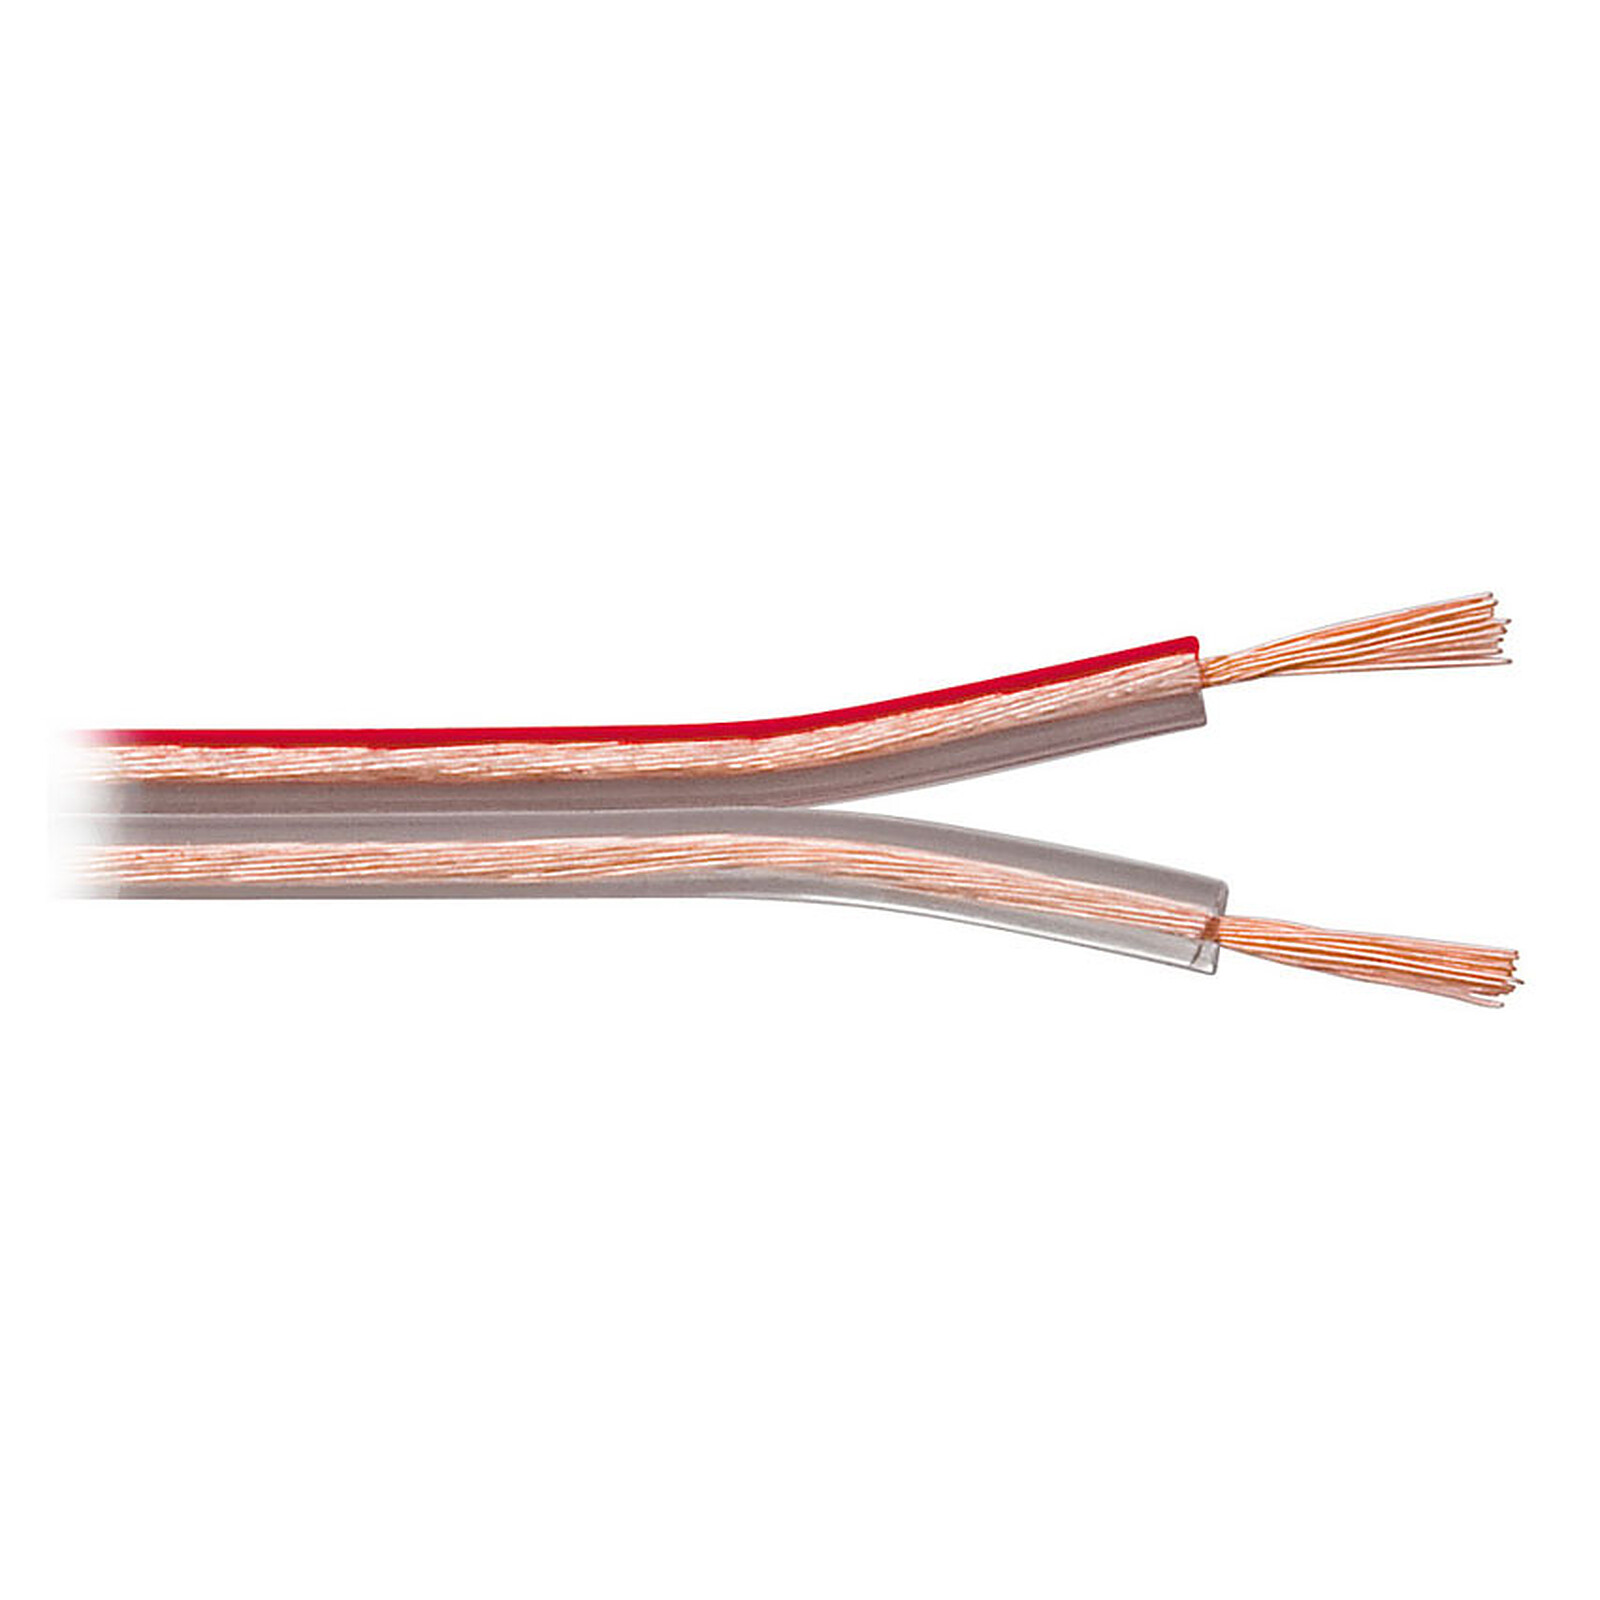 Câble Haut-Parleur 2.5 mm² en cuivre OFC - rouleau de 10 mètres - Câble d' enceintes - Garantie 3 ans LDLC